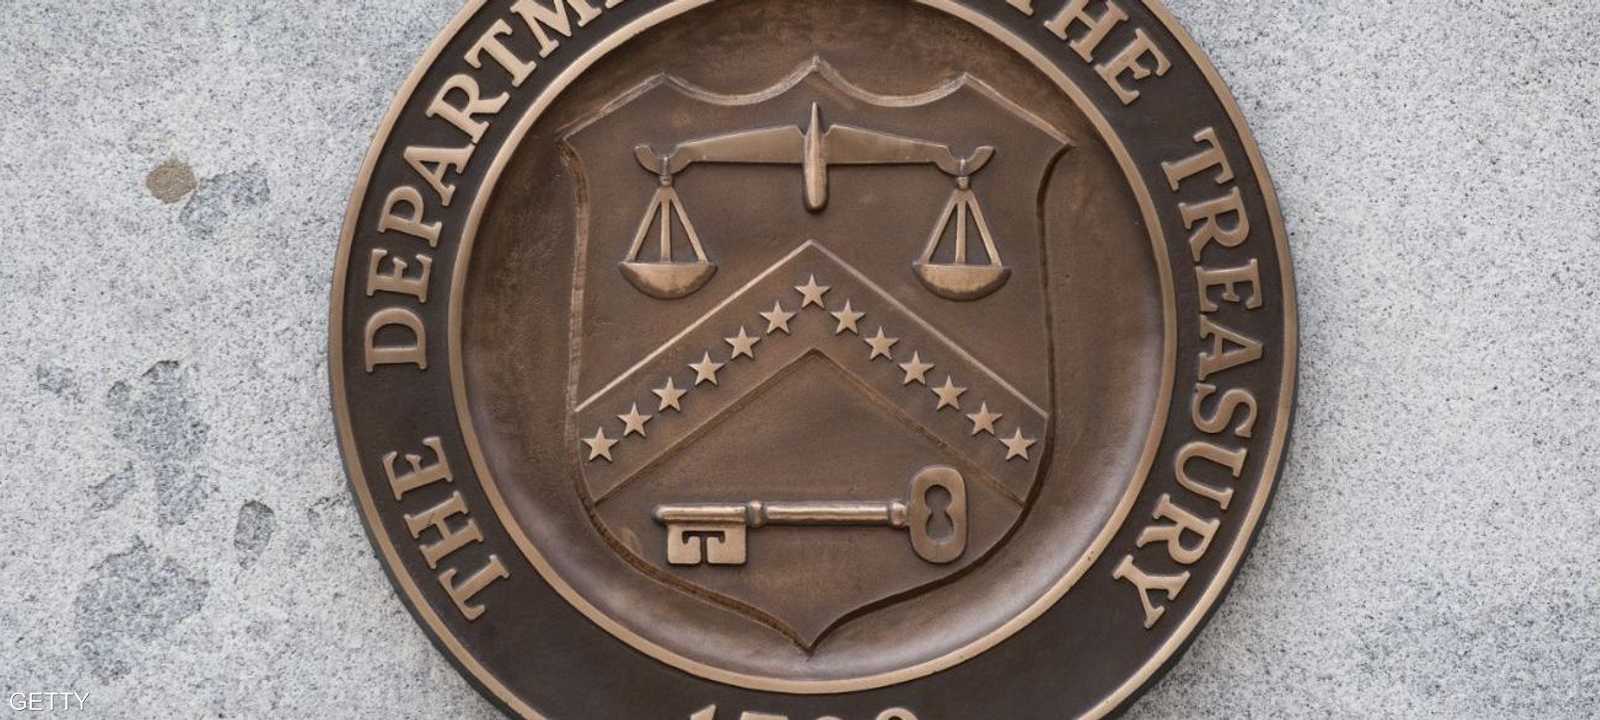 شعار وزارة الخزانة الأميركية